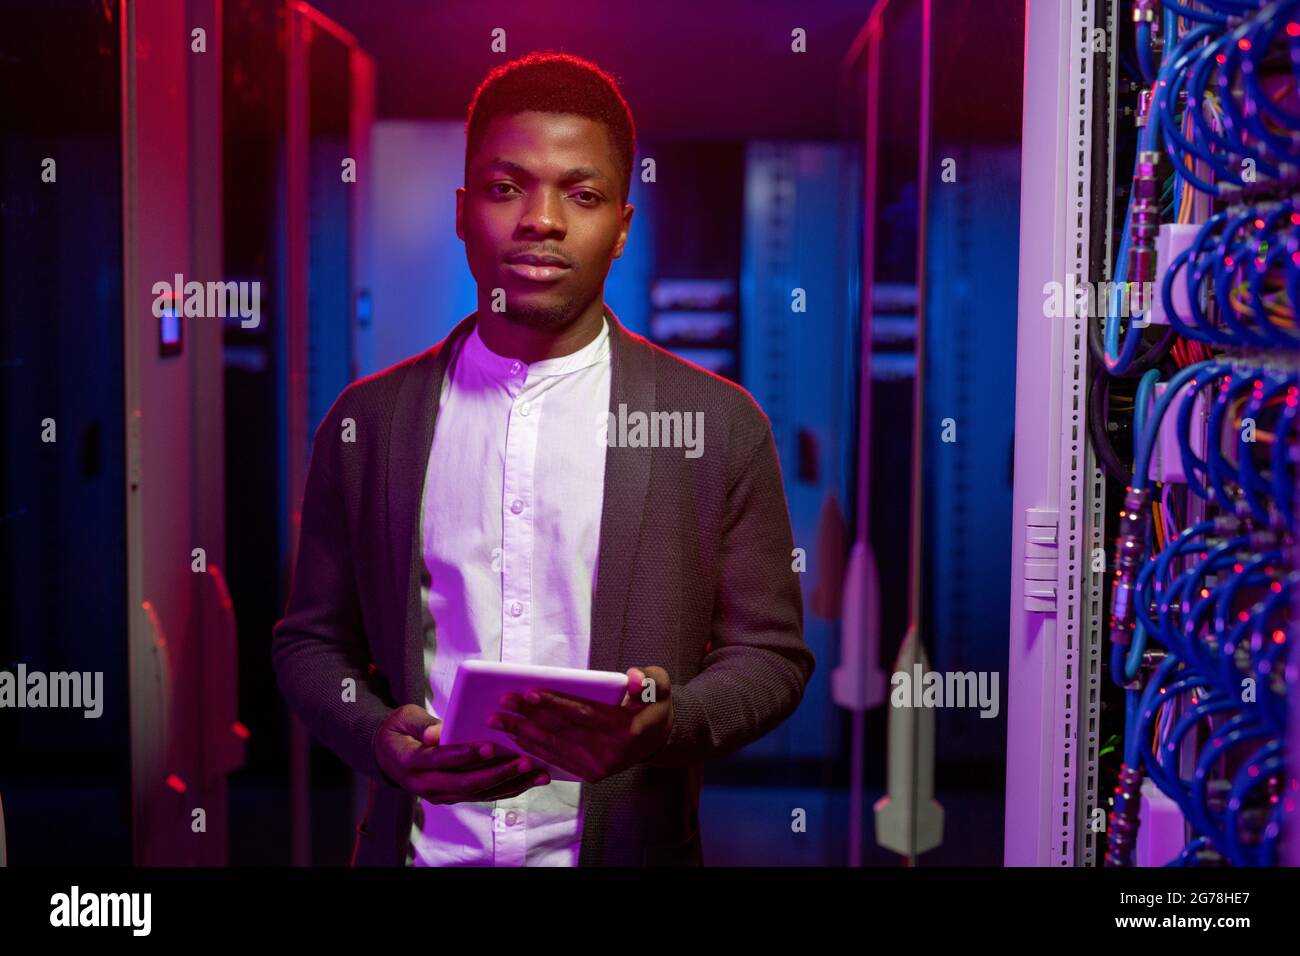 Porträt eines selbstbewussten, gutaussehenden jungen afroamerikanischen Mannes, der für die Verwaltung des Netzwerksystems verantwortlich ist und mit einem Tablet im Rechenzentrum steht Stockfoto